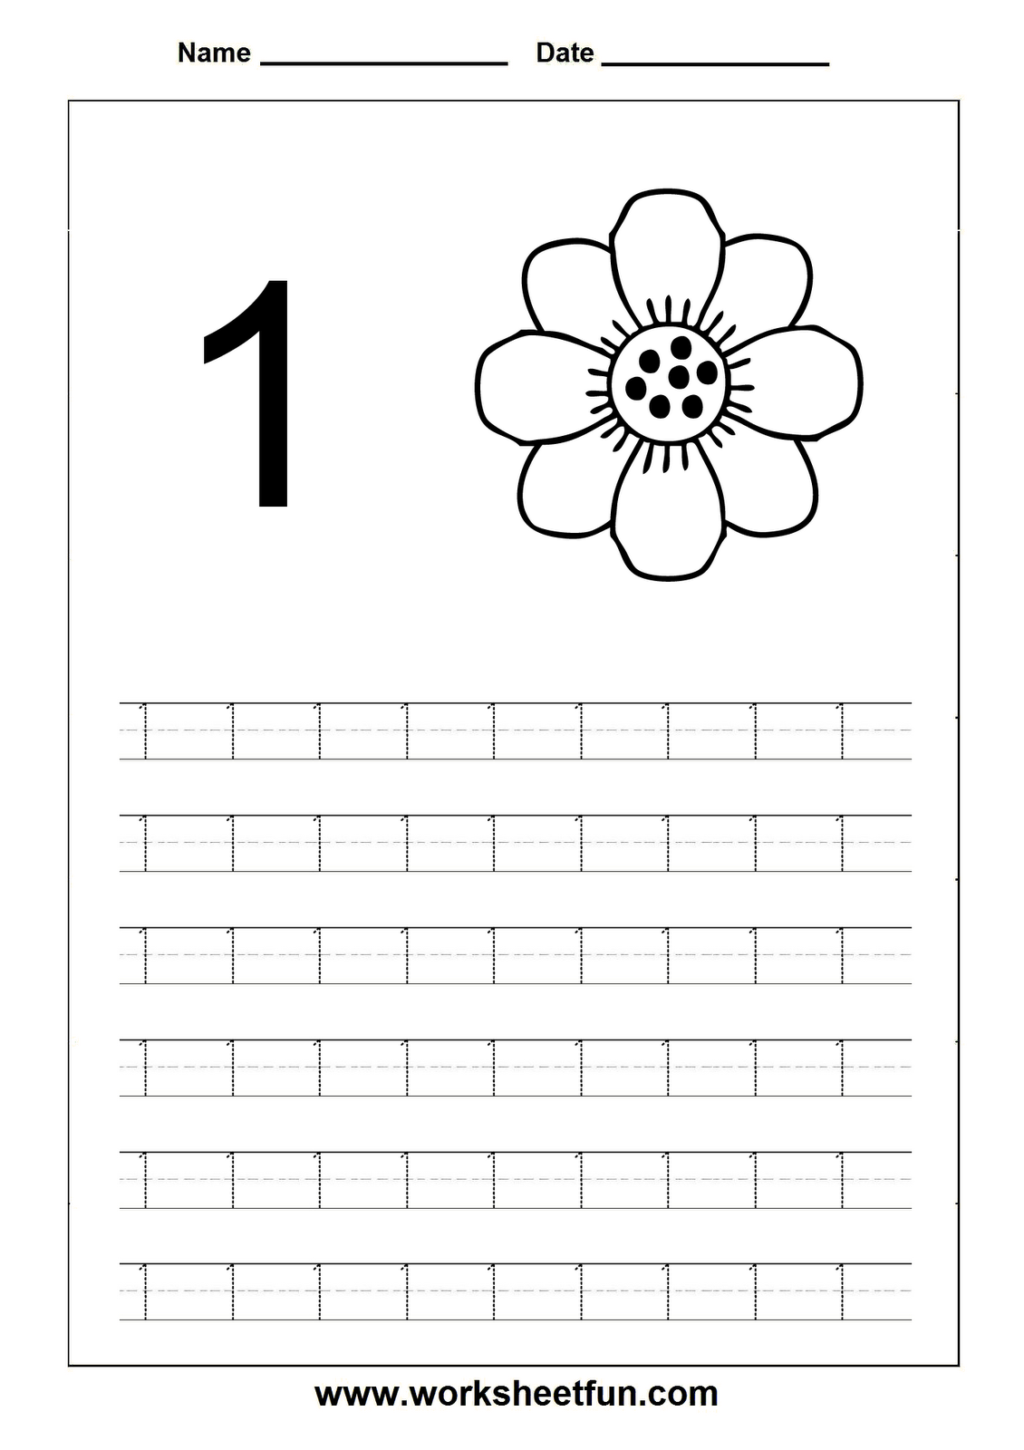 Worksheet ~ Number Tracing Worksheets For Kindergarten And